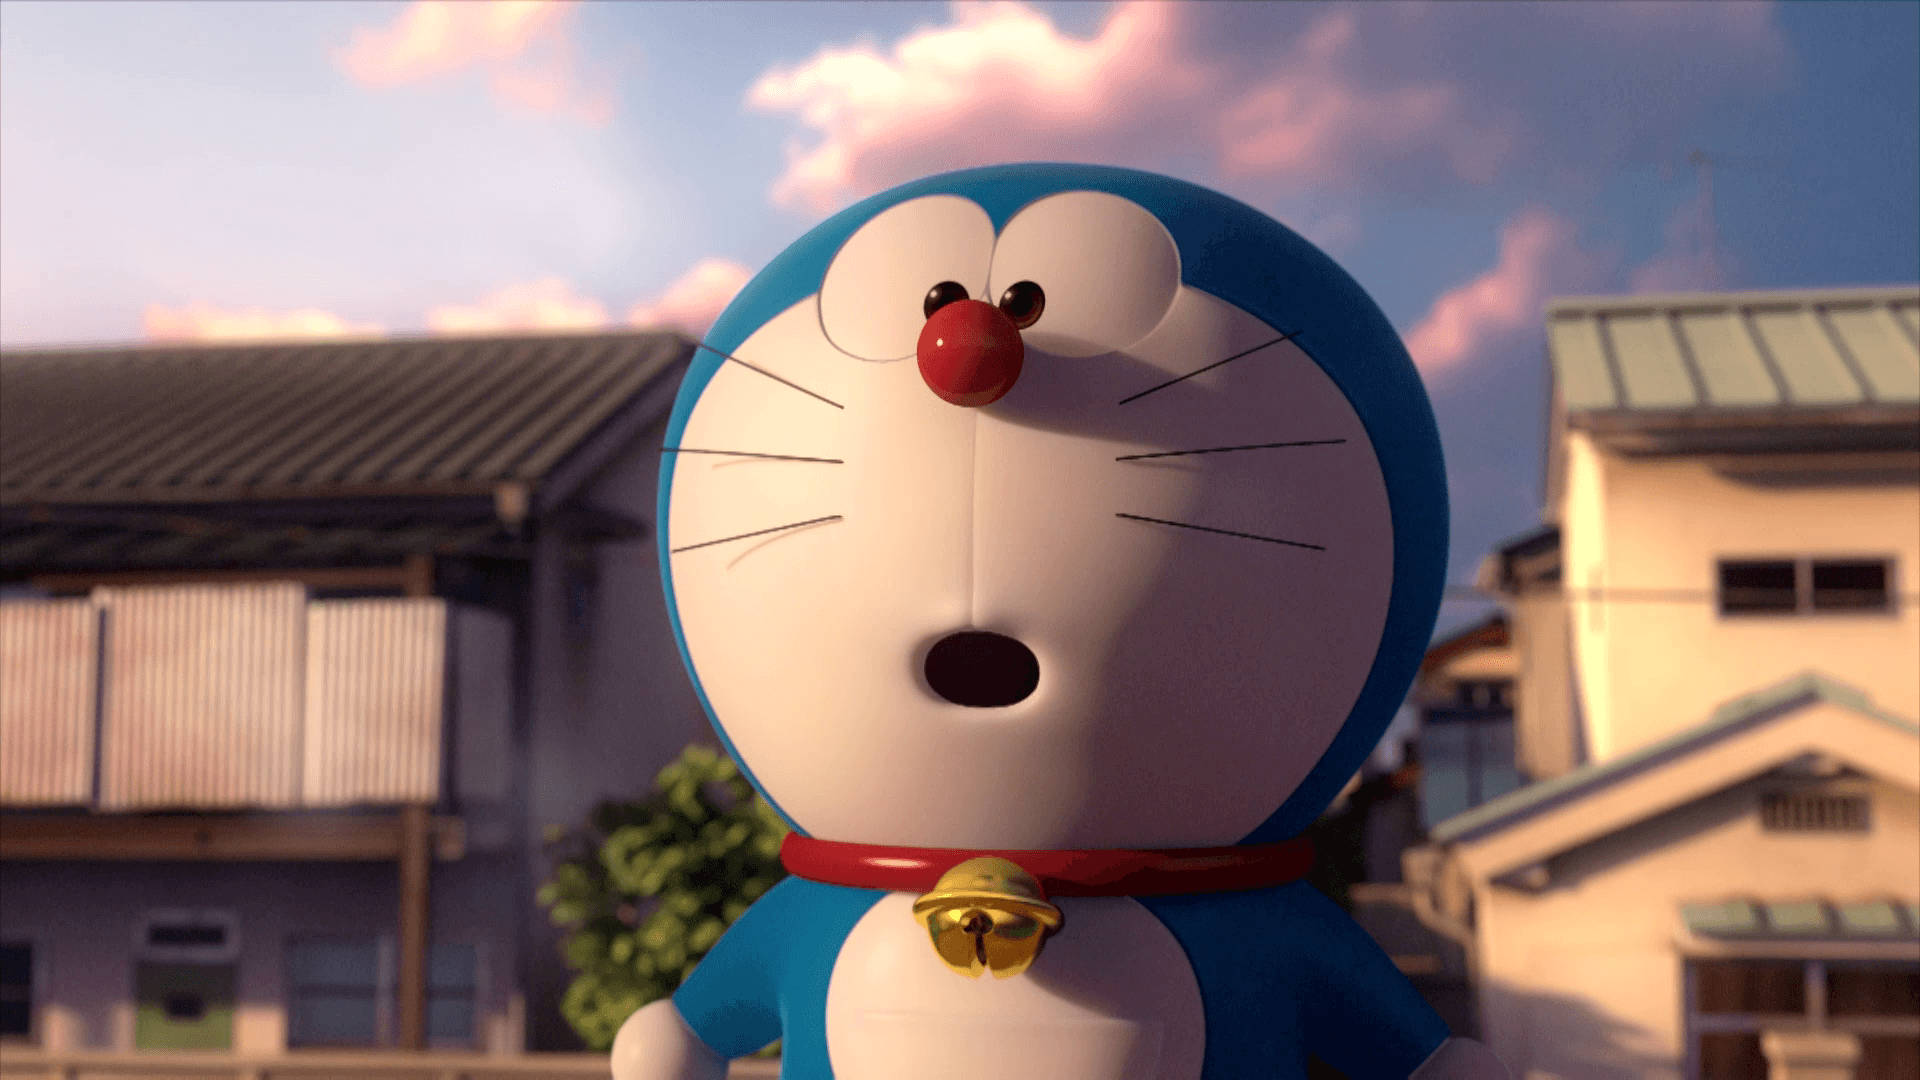 100+] Doraemon 3d Wallpapers | Wallpapers.com